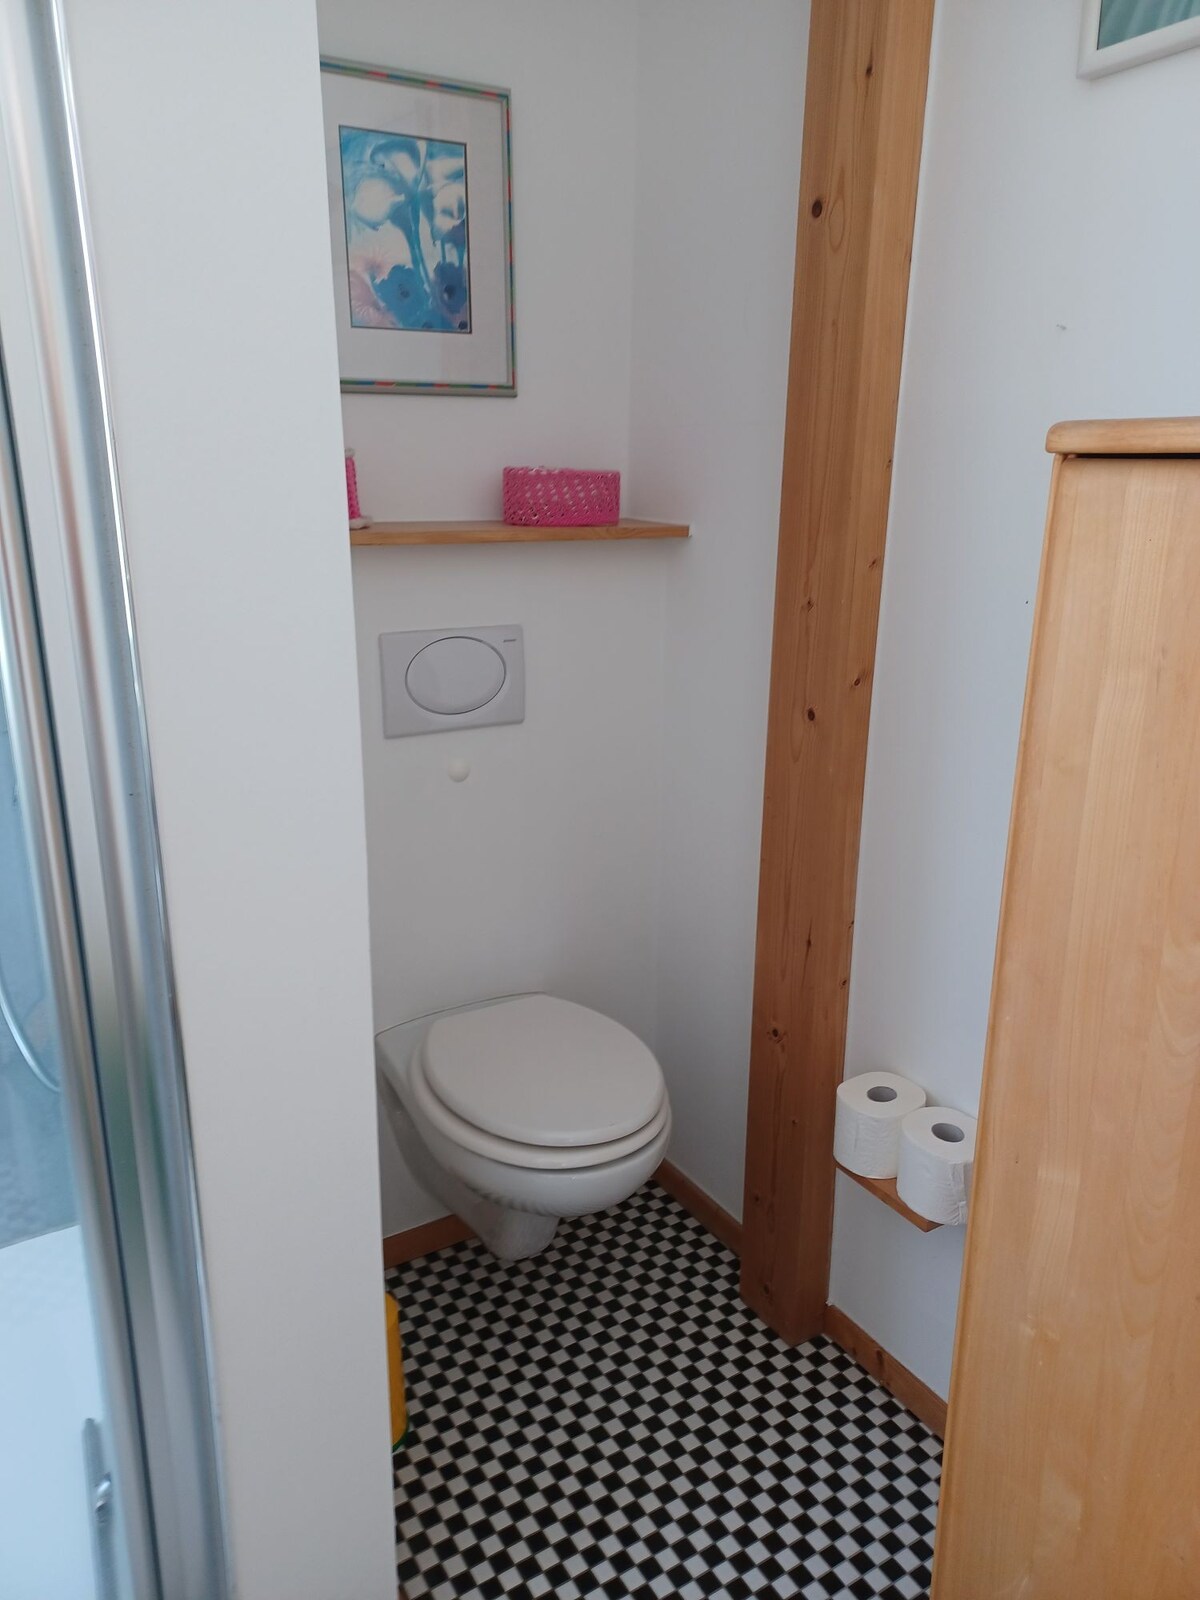 Einladendes Privatzimmer mit Toilette und Dusche